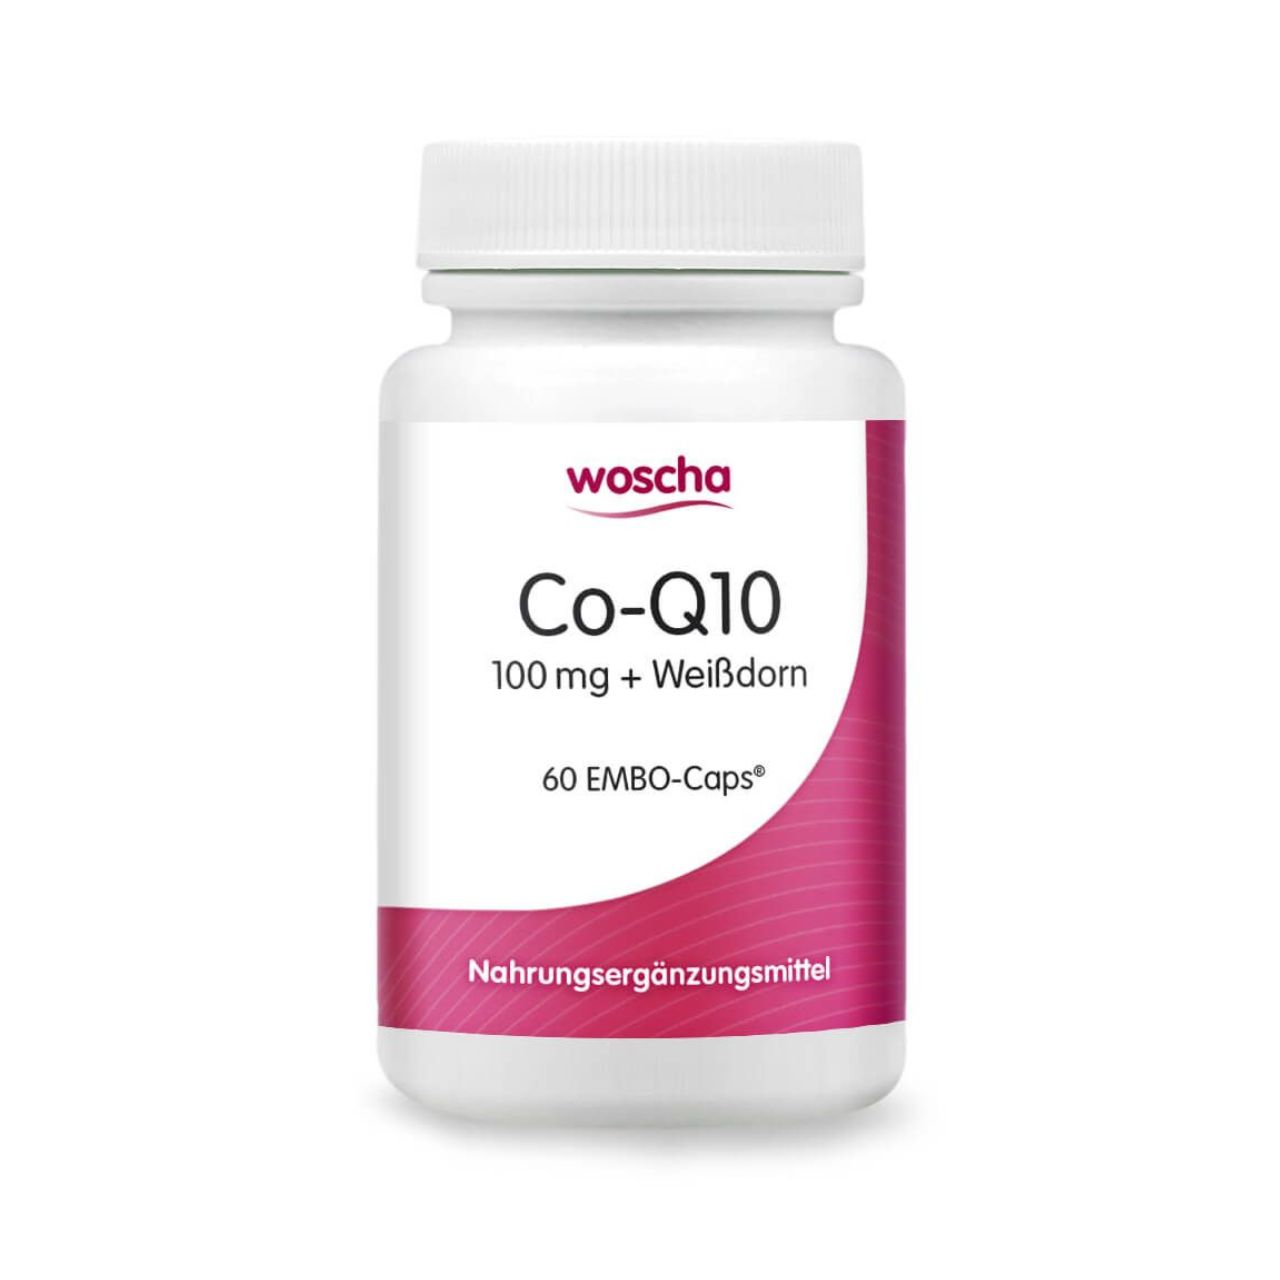 Woscha Co-Q10 mit Weißdorn von podo medi beinhaltet 60 Kapseln